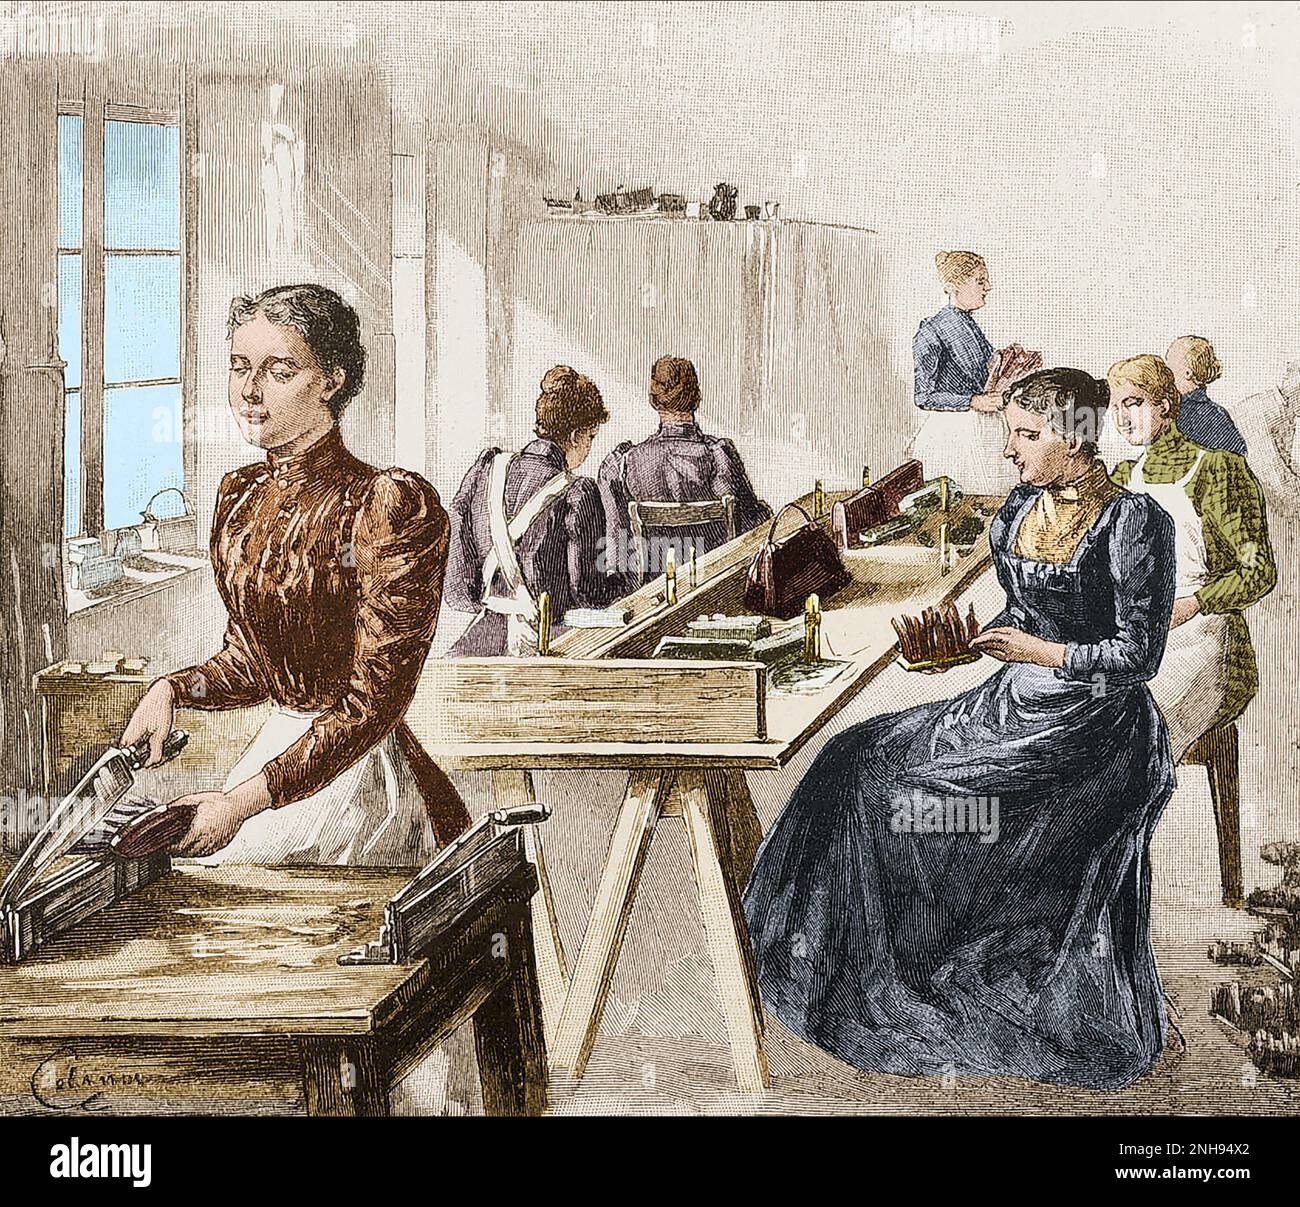 Blinde Frauen machen Stiefel in einer Blindenschule im 19. Jahrhundert. Valentin Hauy (1745-1822) gründete 1785 in Paris die erste Blindenschule, die Louis Braille 1819 besuchte. Andere Blindenschulen folgten seinem Modell. Gefärbt. Stockfoto